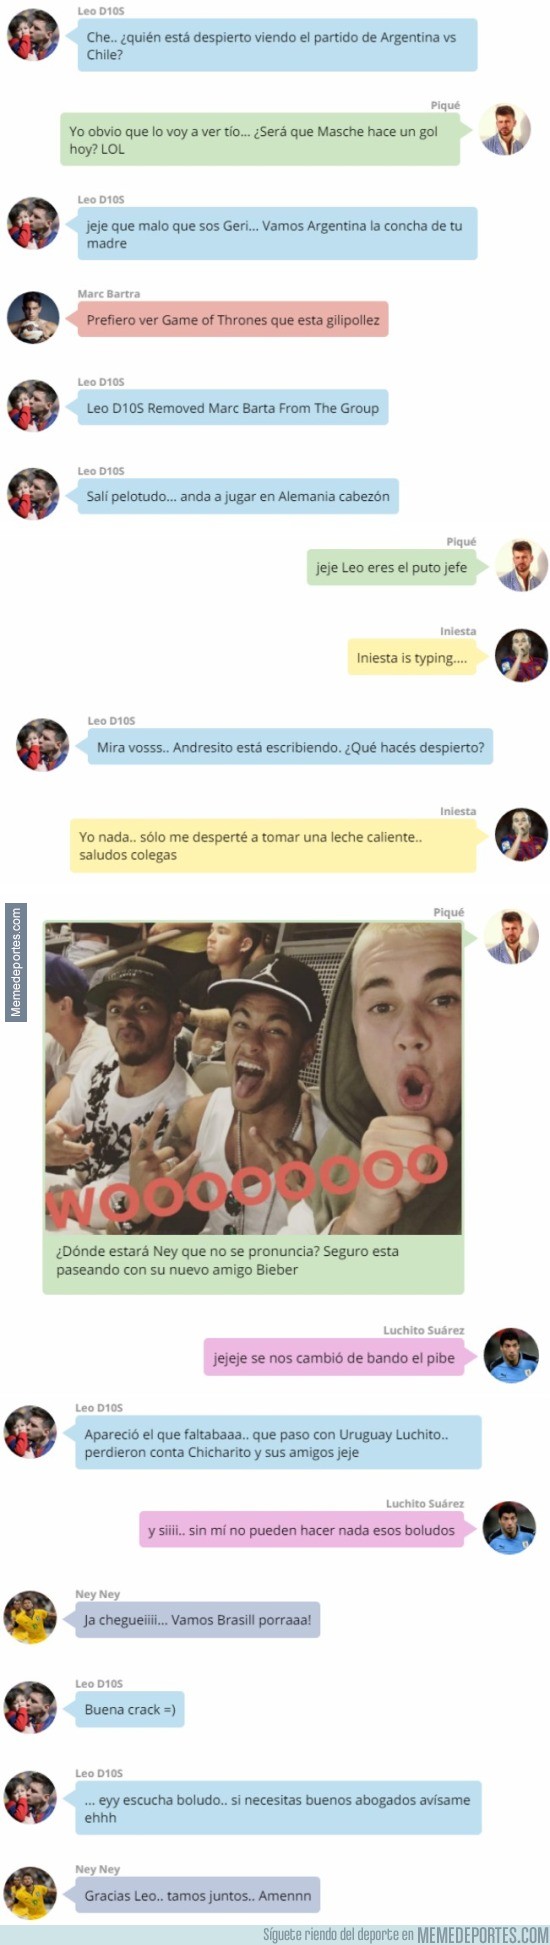 869043 - La conversación privada de Whatsapp entre Messi y sus amigos del Barça durante el Argentina - Chile